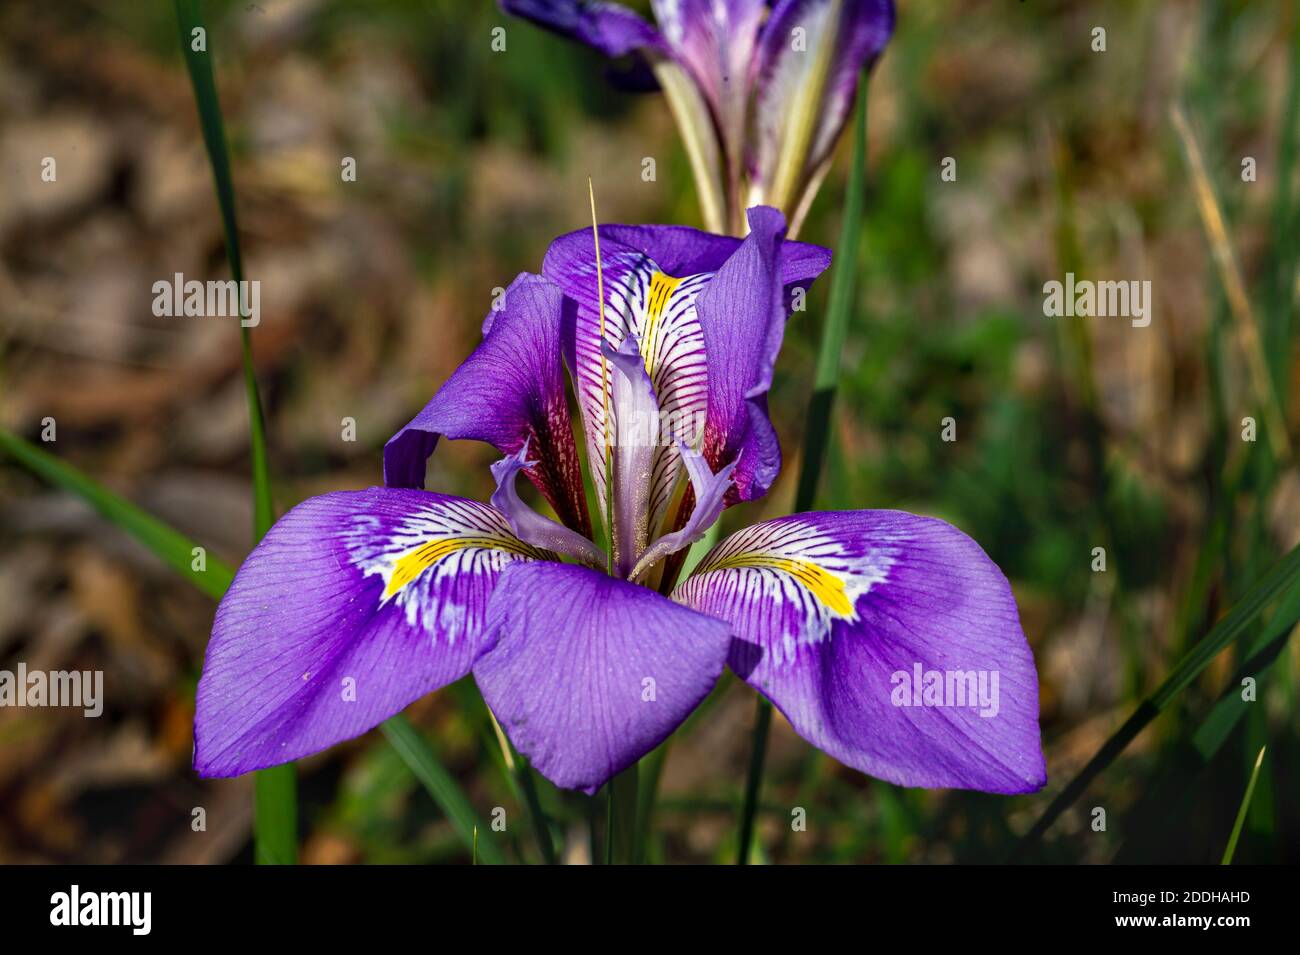 Fleur d'iris photographiée en gros plan. Fleur pourpre avec coeur jaune. Banque D'Images